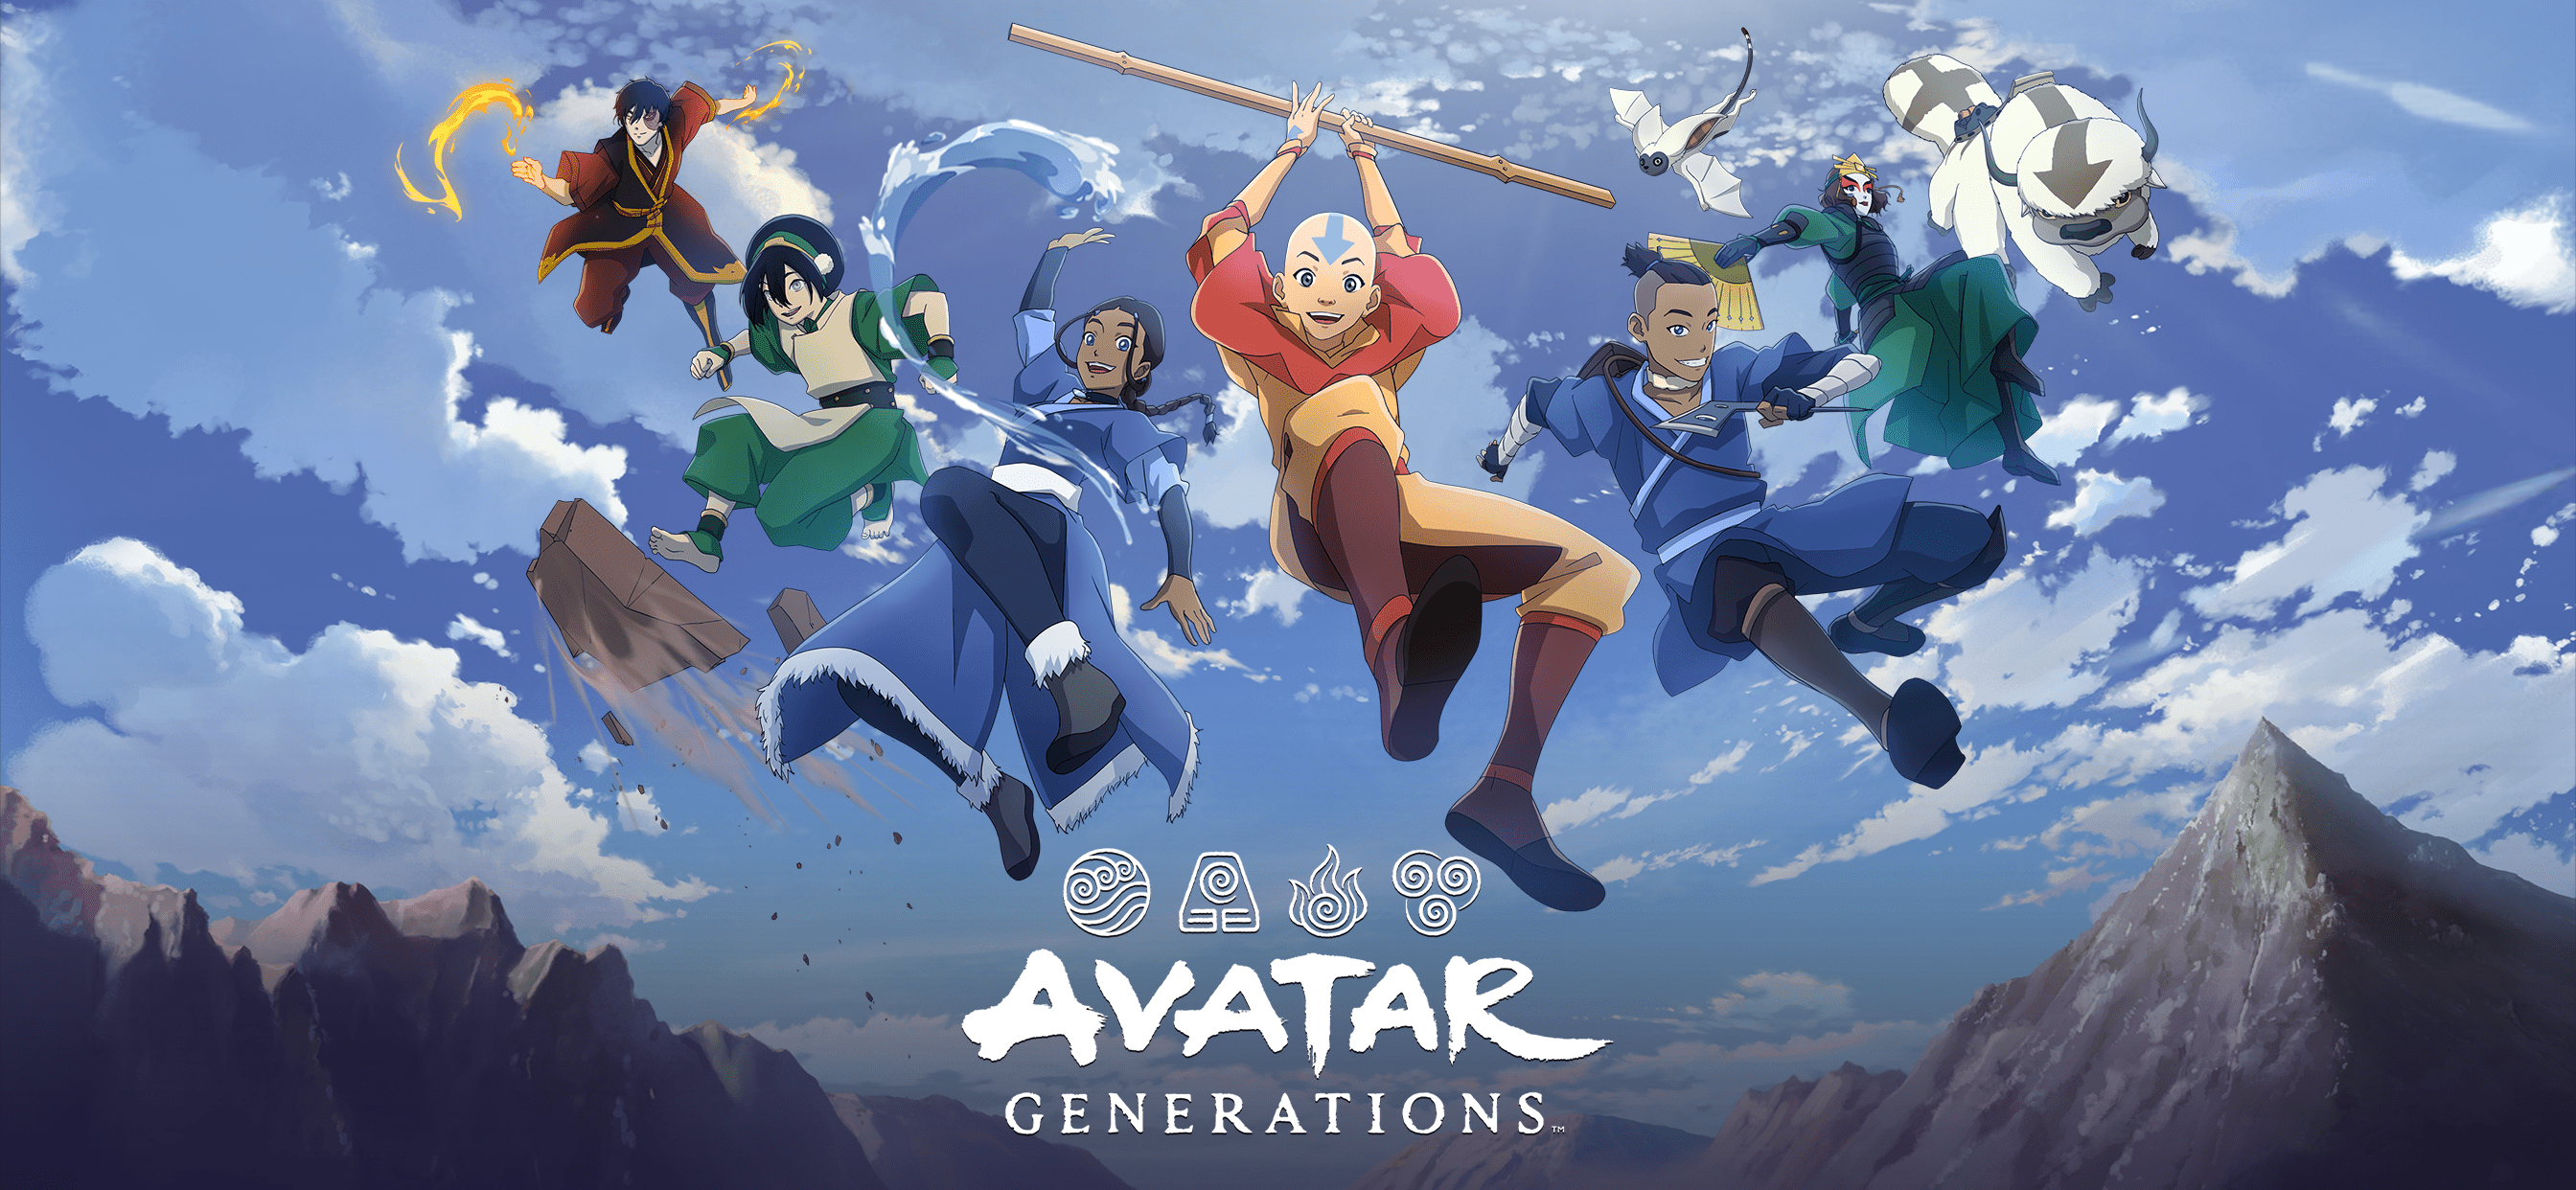 Wstępna rejestracja do Avatar Generations, mobilnej gry RPG opartej na uniwersum Avatara Aanga, jest już dostępna